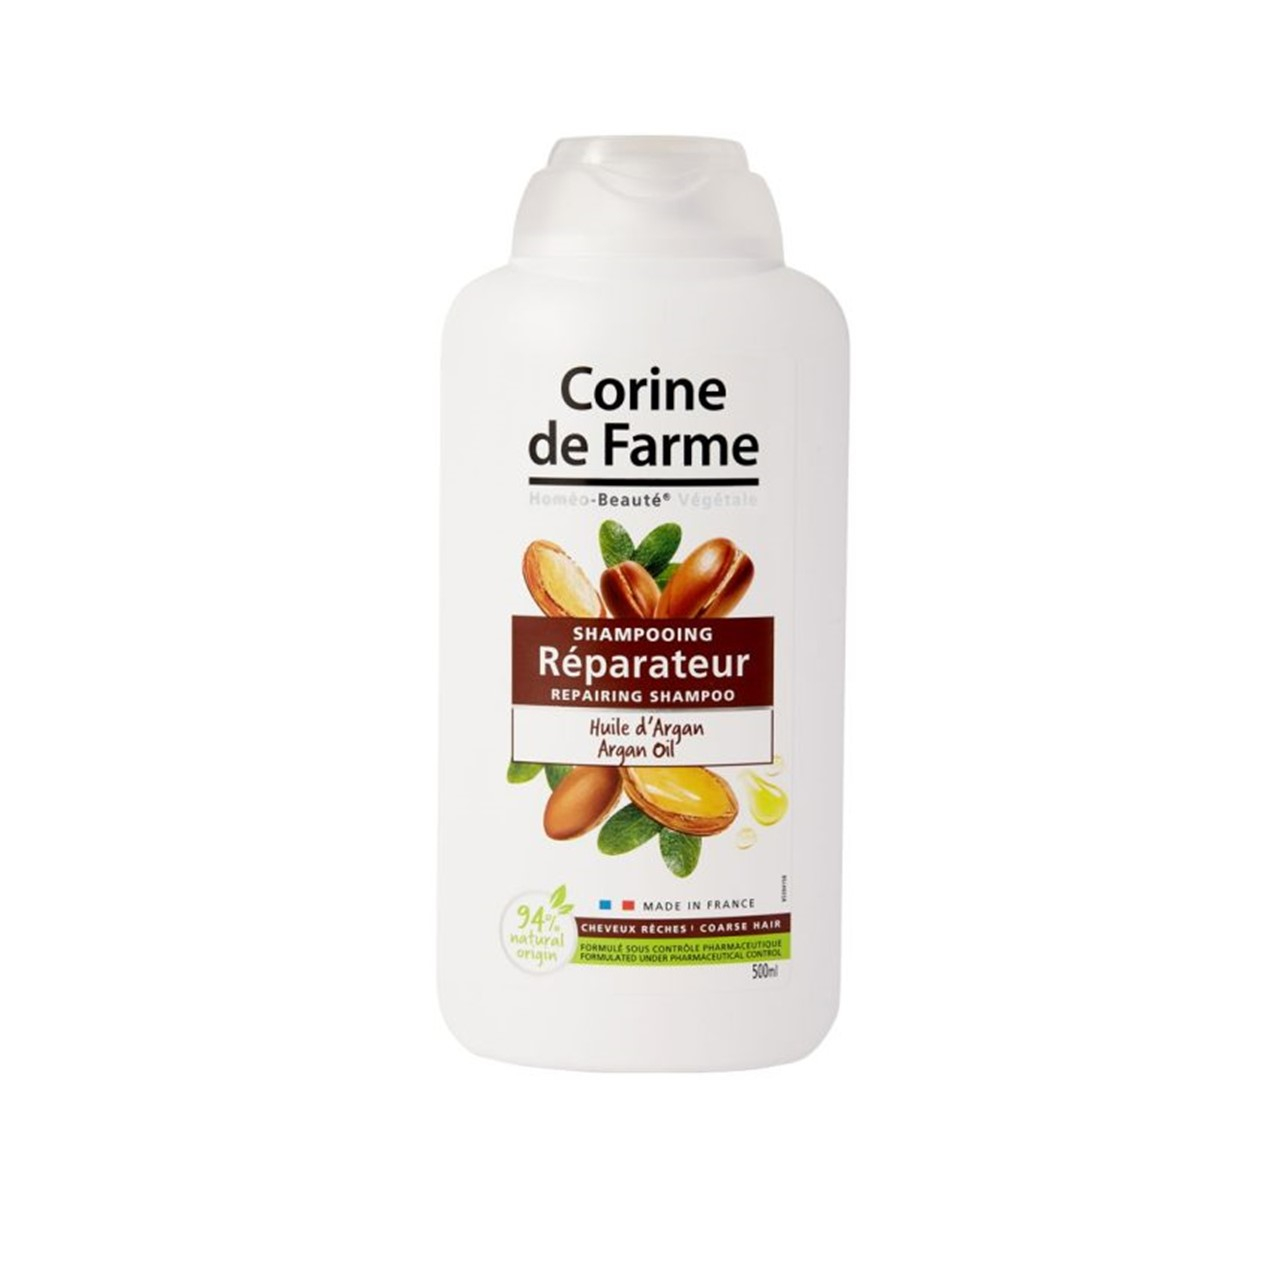 Corine de Farme Repairing Shampoo With Argan Oil 500ml